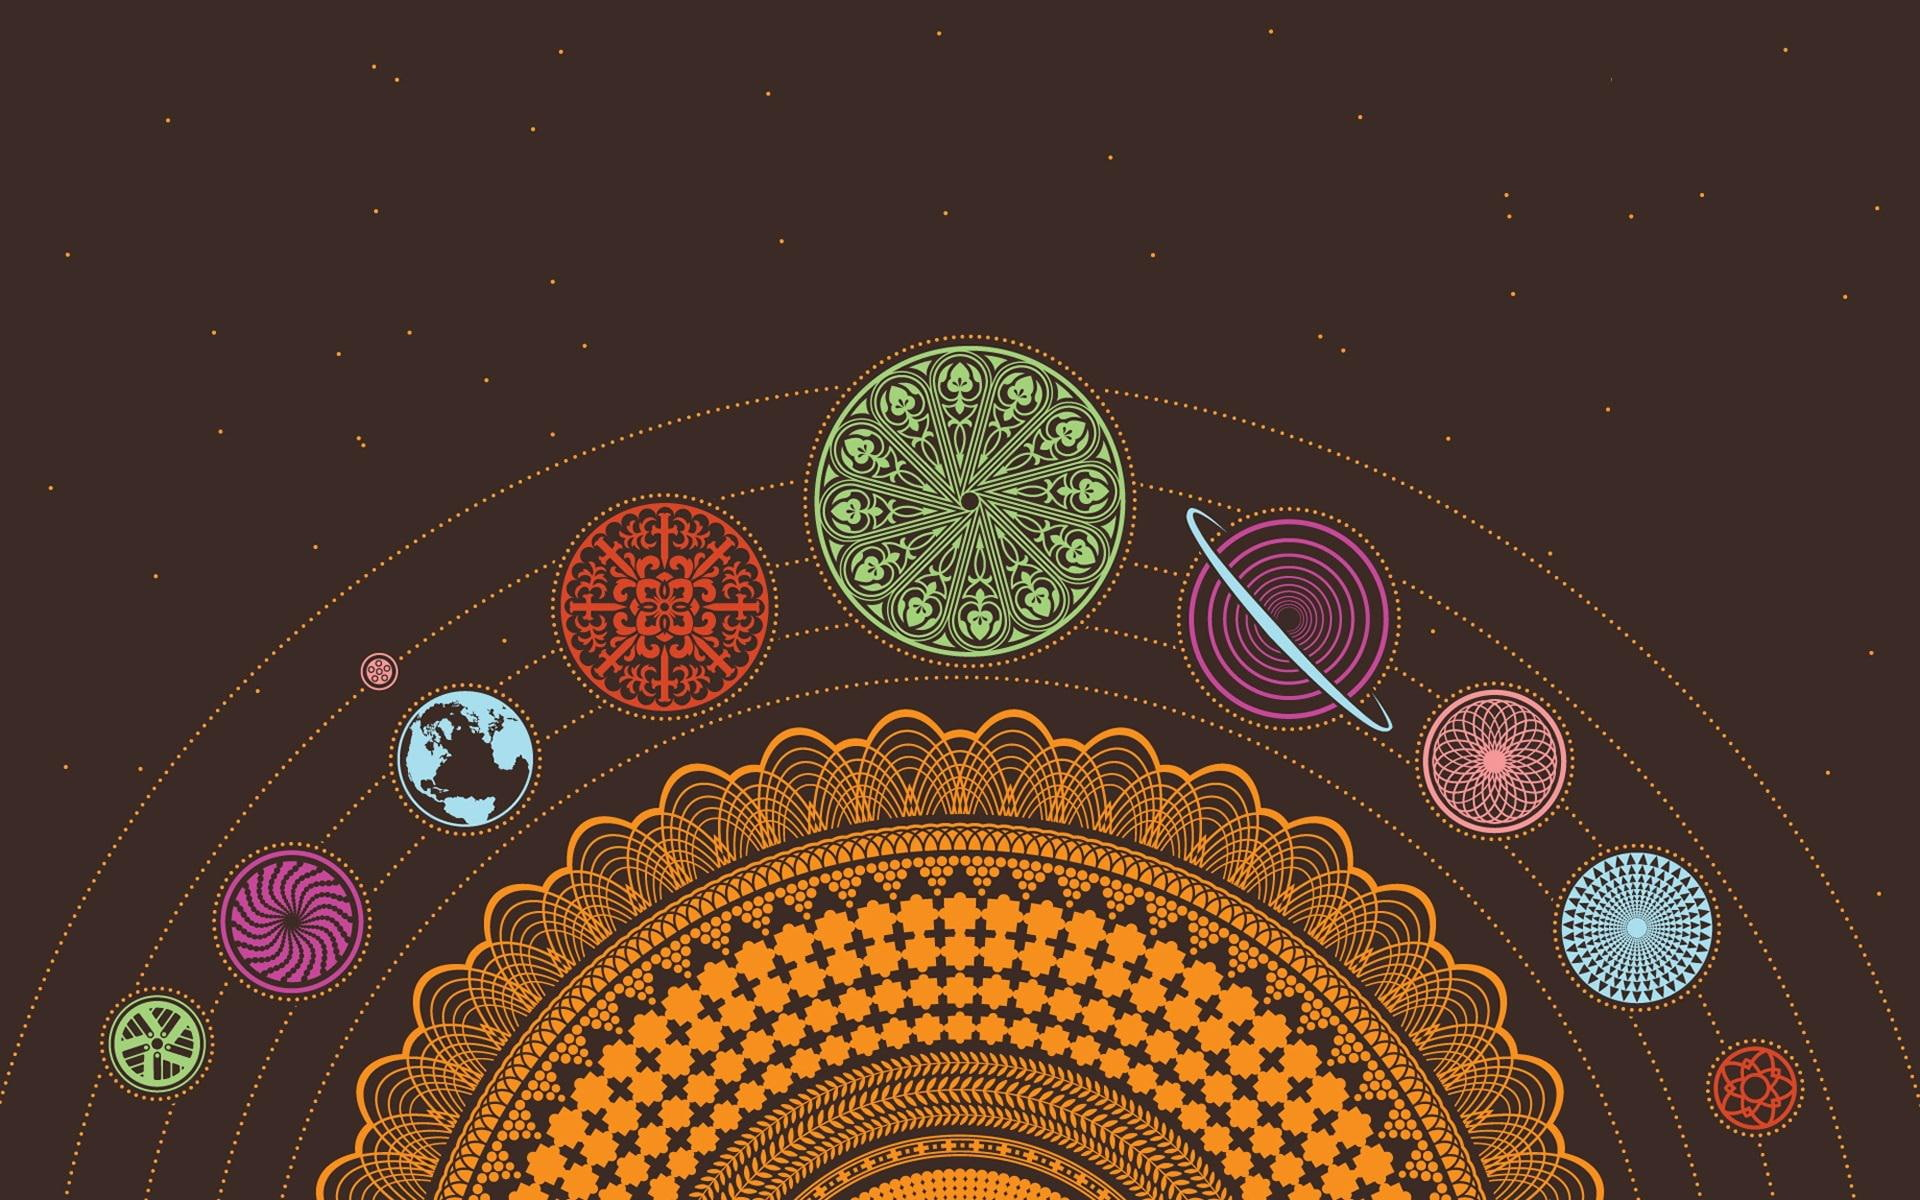 Artistic solar system wallpaper, solar system illustration, vector, 1920x1200